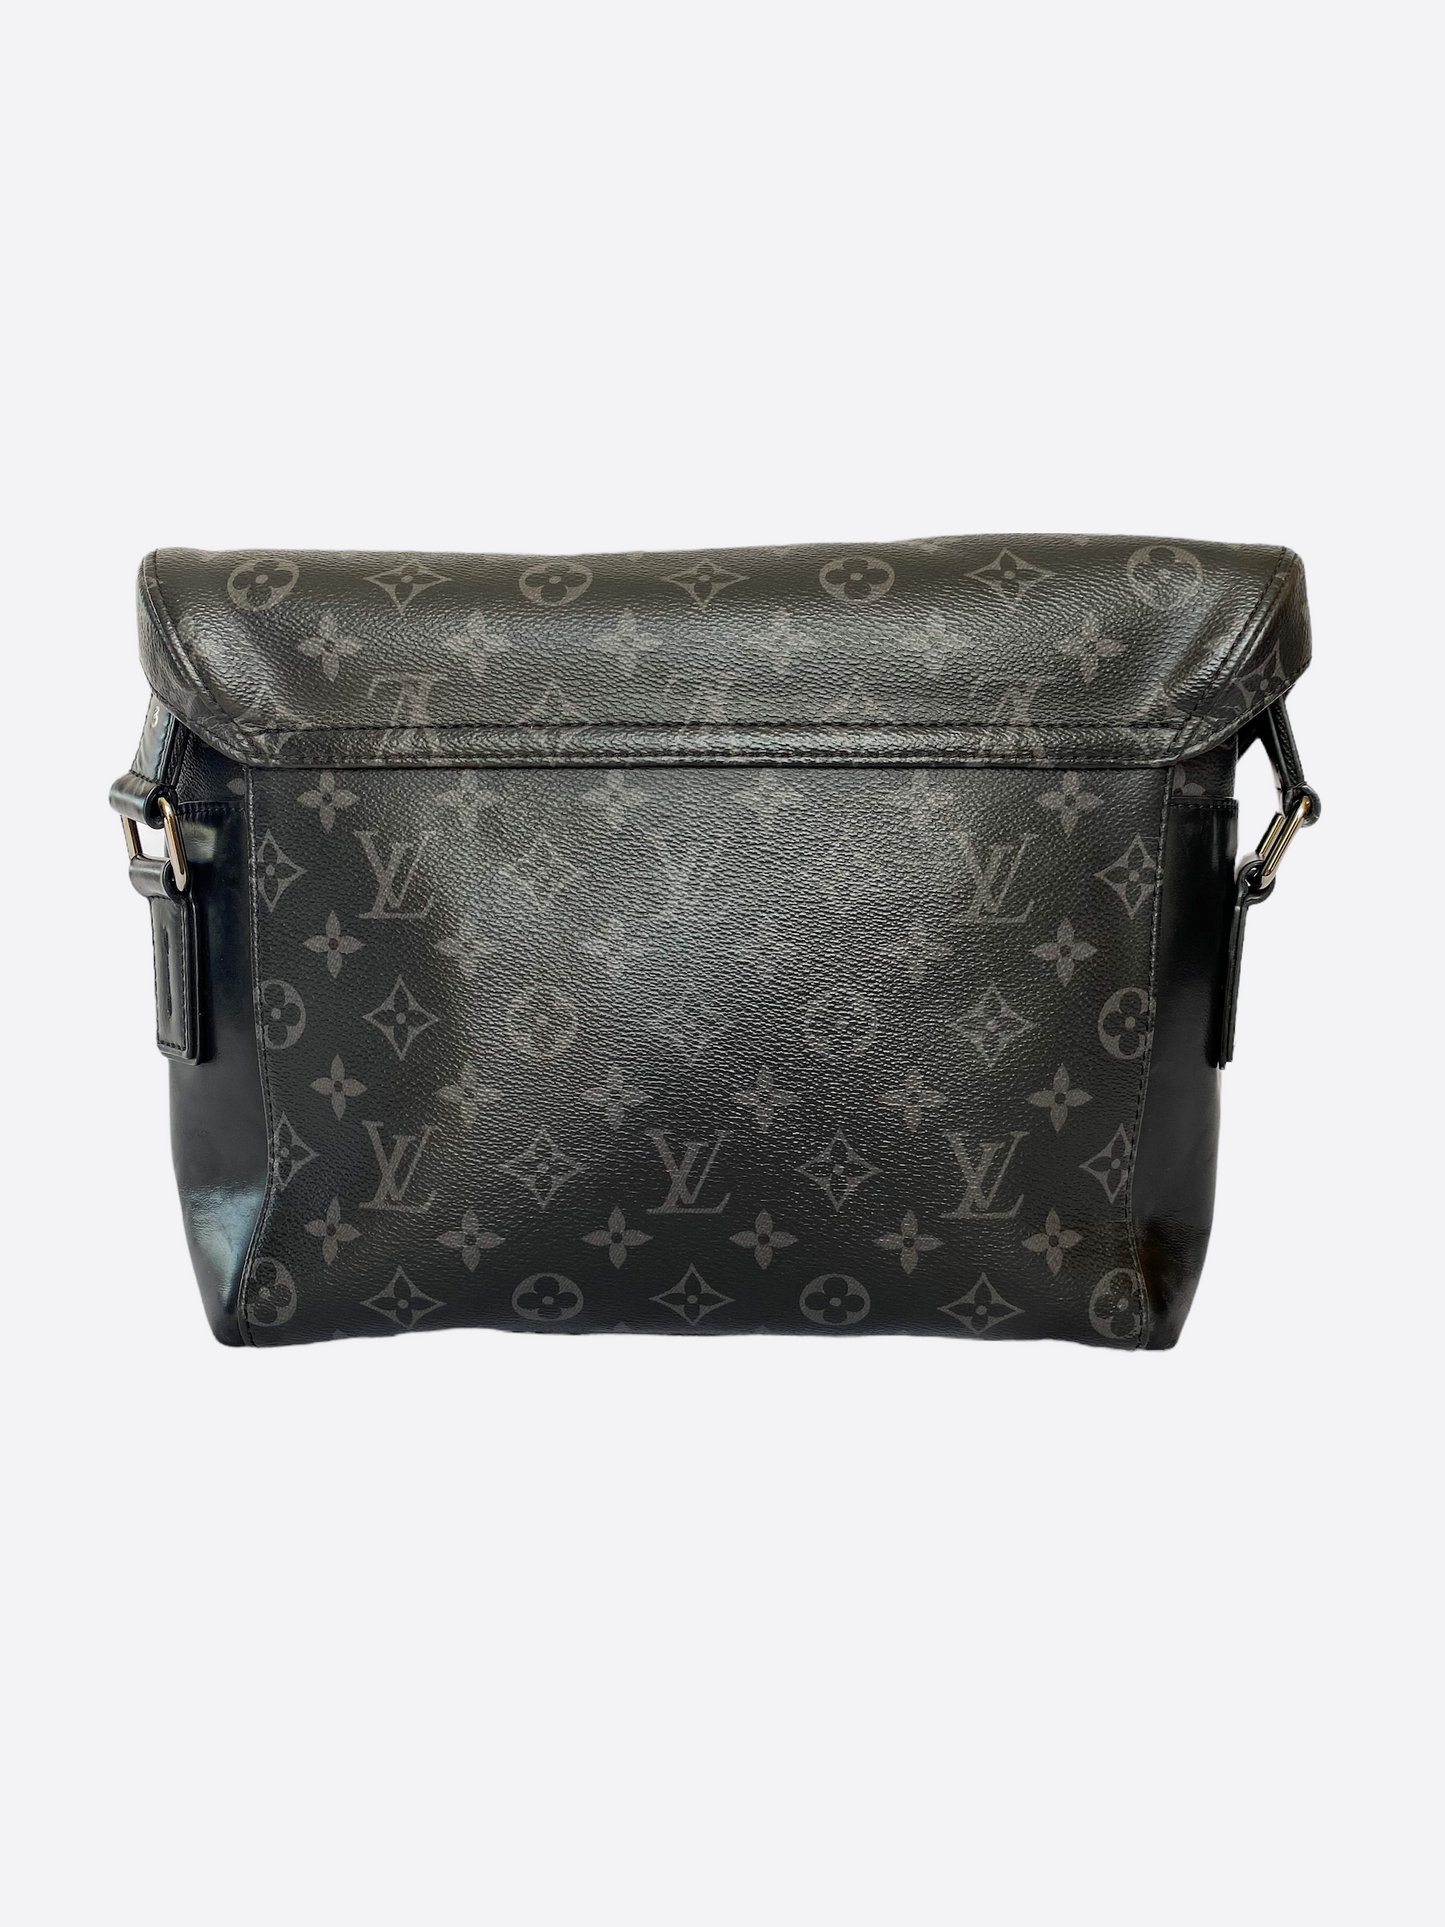 Louis Vuitton, Bags, Louis Vuitton Mens Messenger Voyage Pm Shoulder Bag  Monogram Eclipse Black Gray